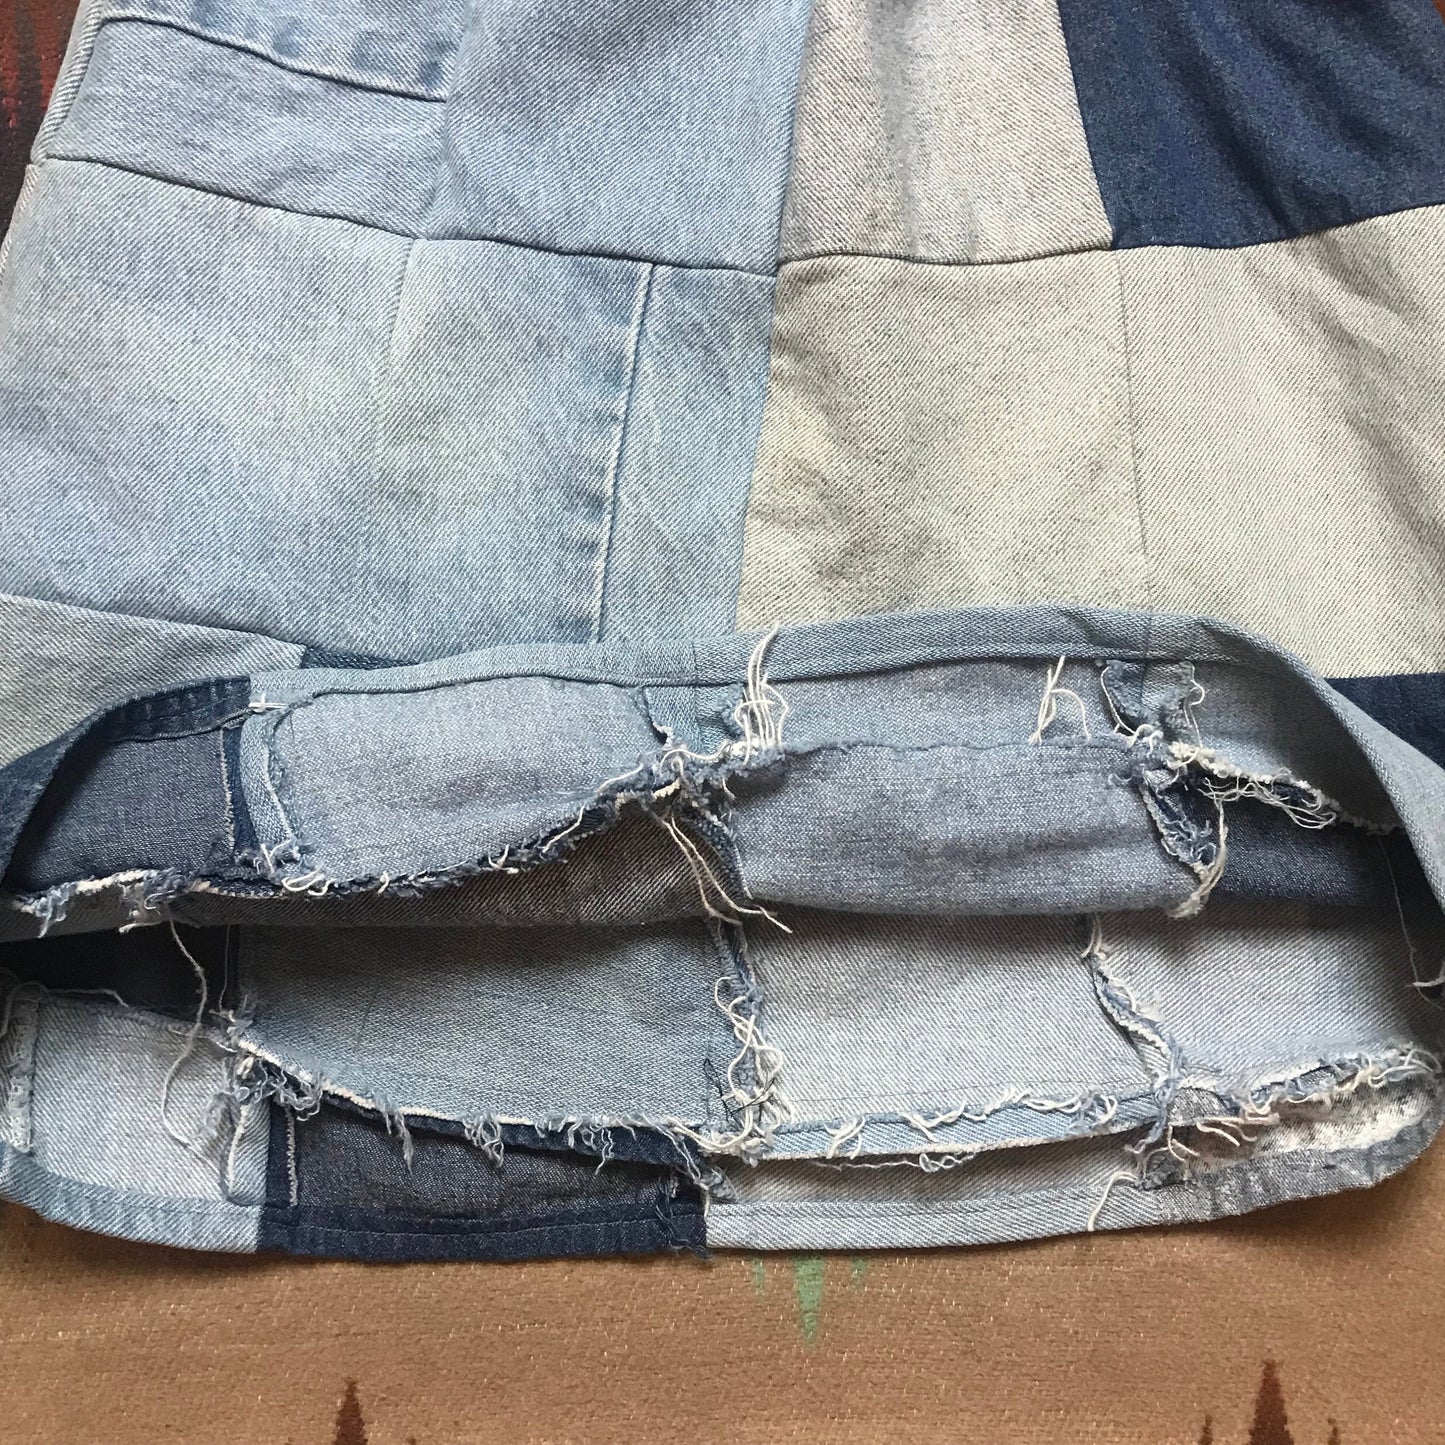 1980s/1990s Homemade Patchwork Denim Skirt Size 22-28 Waist